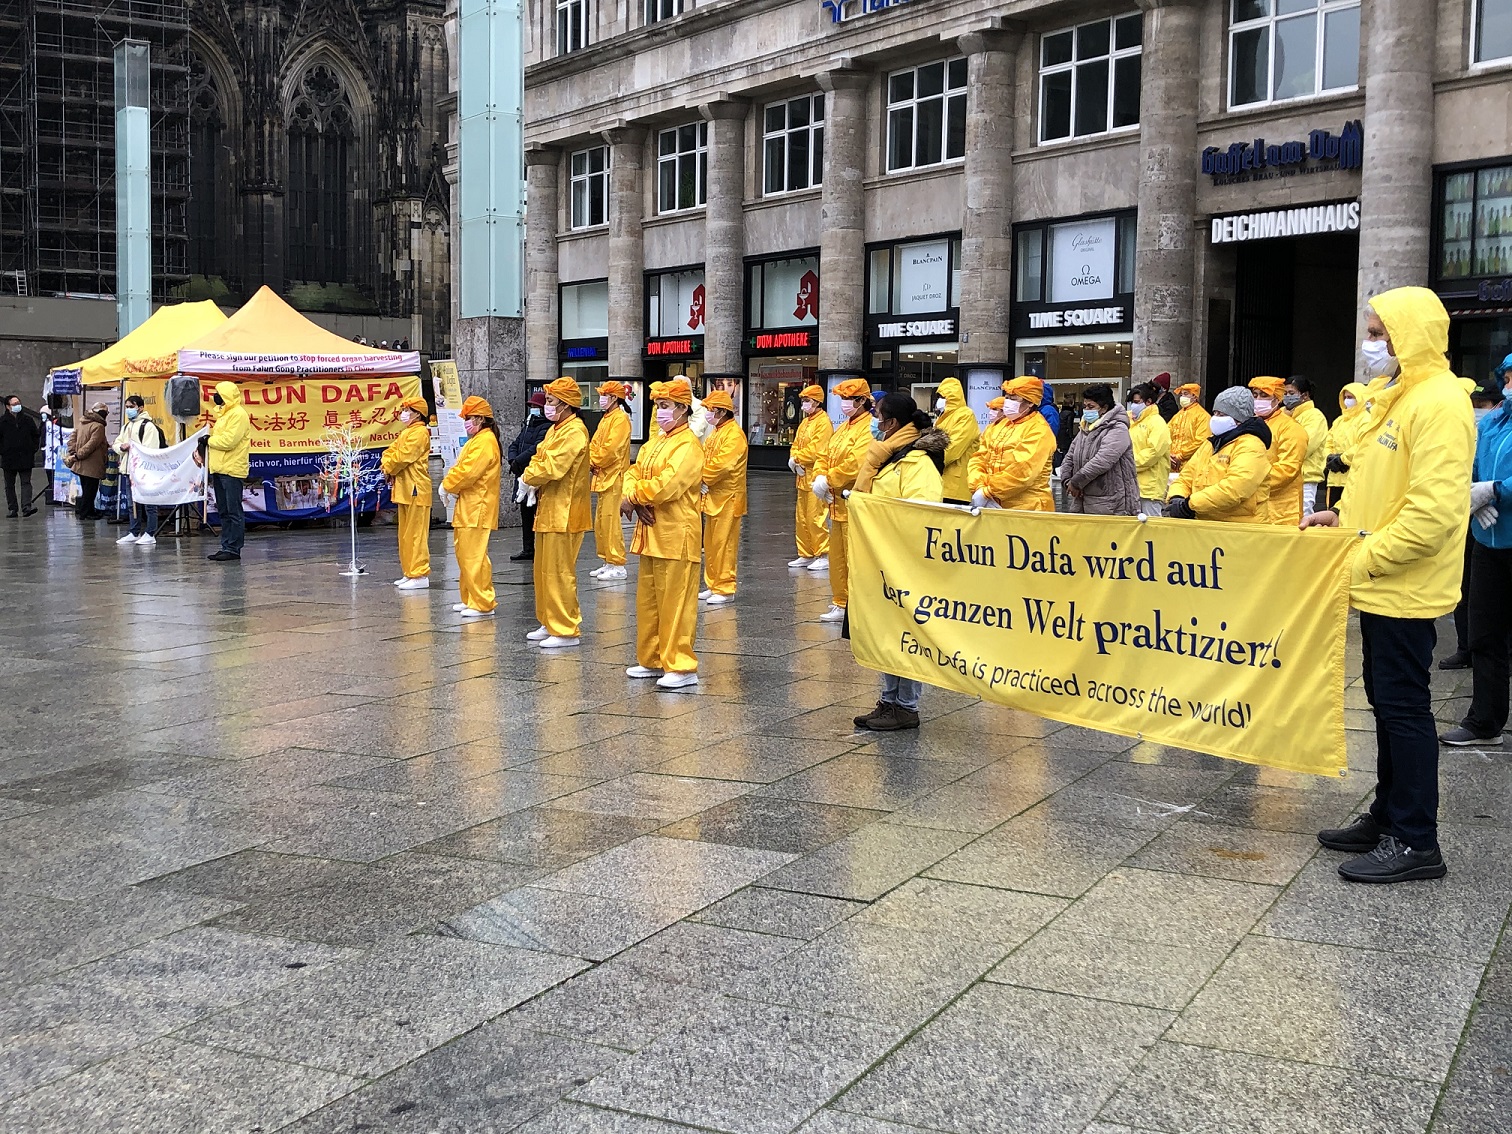 Image for article Alemania: la gente alienta a los practicantes de Falun Dafa en Colonia